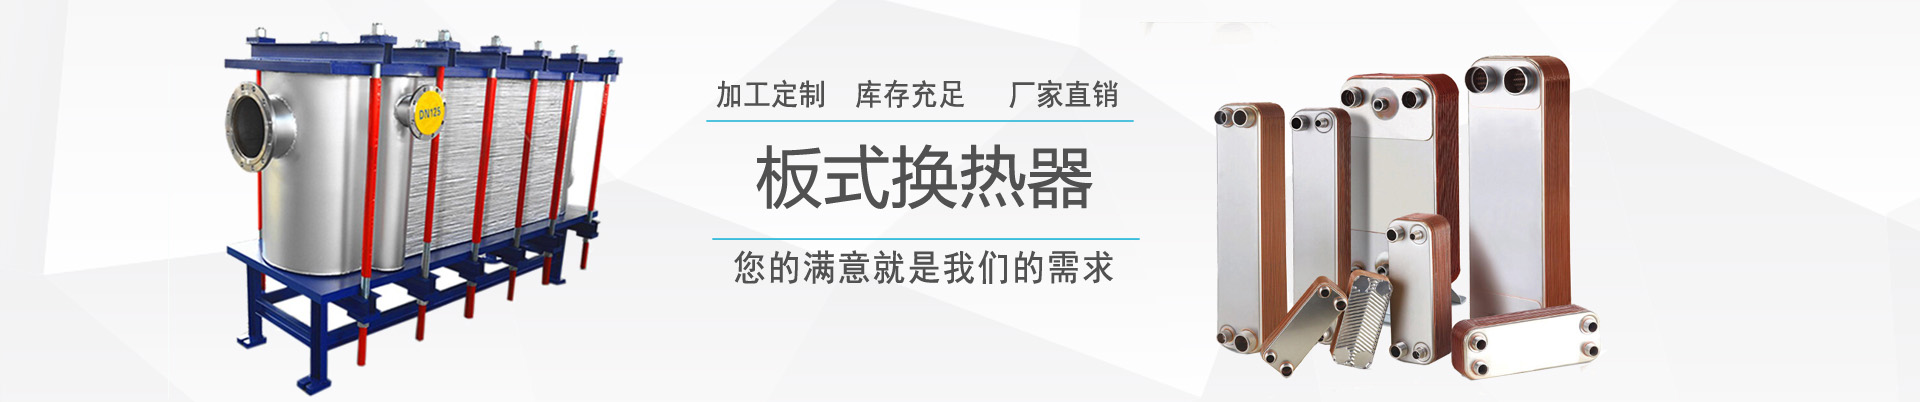 合作案例 - ,換熱器,板式換熱器,換熱器機組,上海將星化工設備有限公司